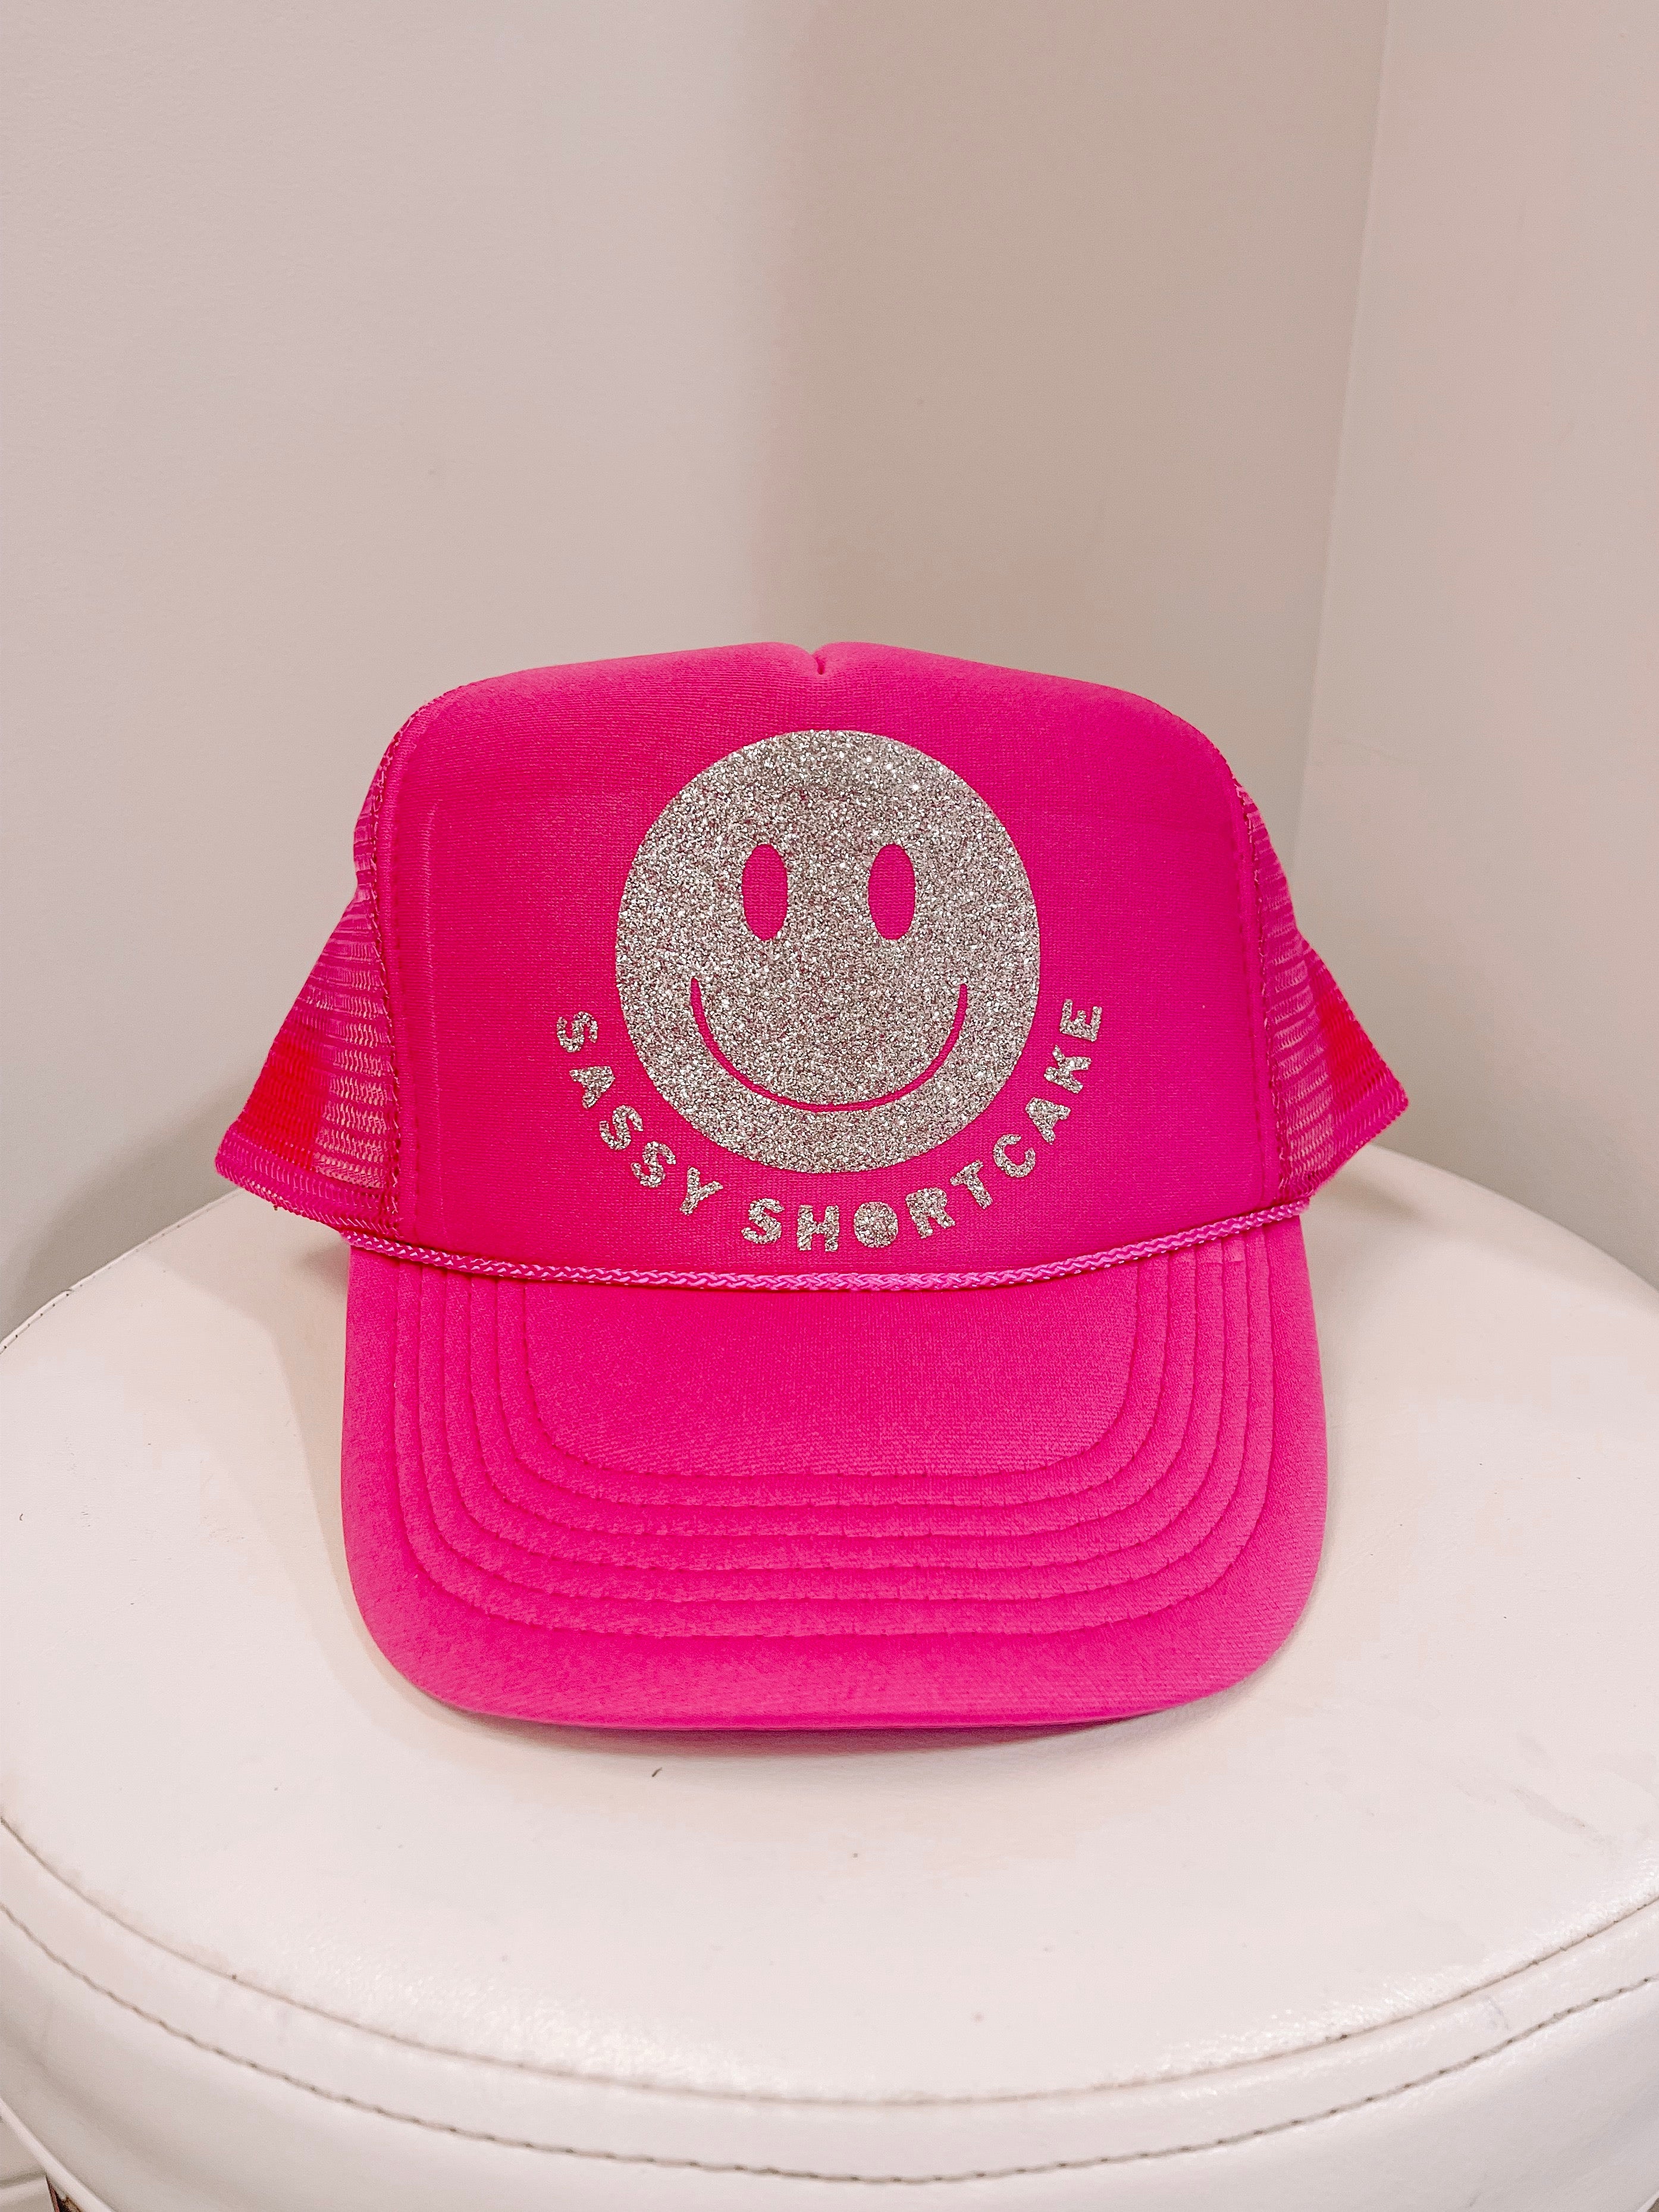 Smiley Sassy Shortcake Pink Hat | Sassy Shortcake | sassyshortcake.com